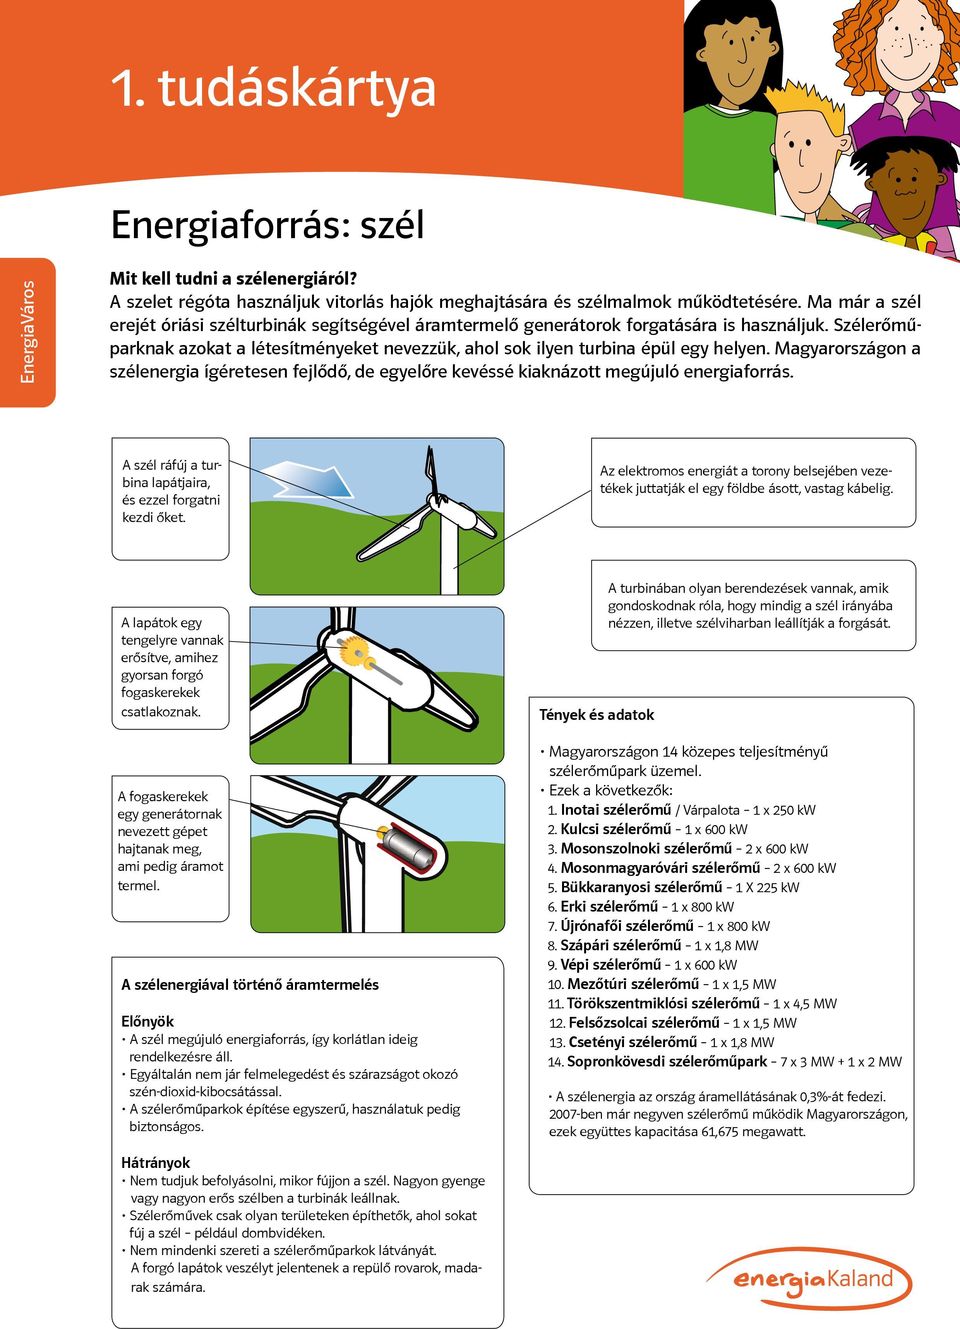 Magyarországon a szélenergia ígéretesen fejlődő, de egyelőre kevéssé kiaknázott megújuló energiaforrás. A szél ráfúj a turbina lapátjaira, és ezzel forgatni kezdi őket.